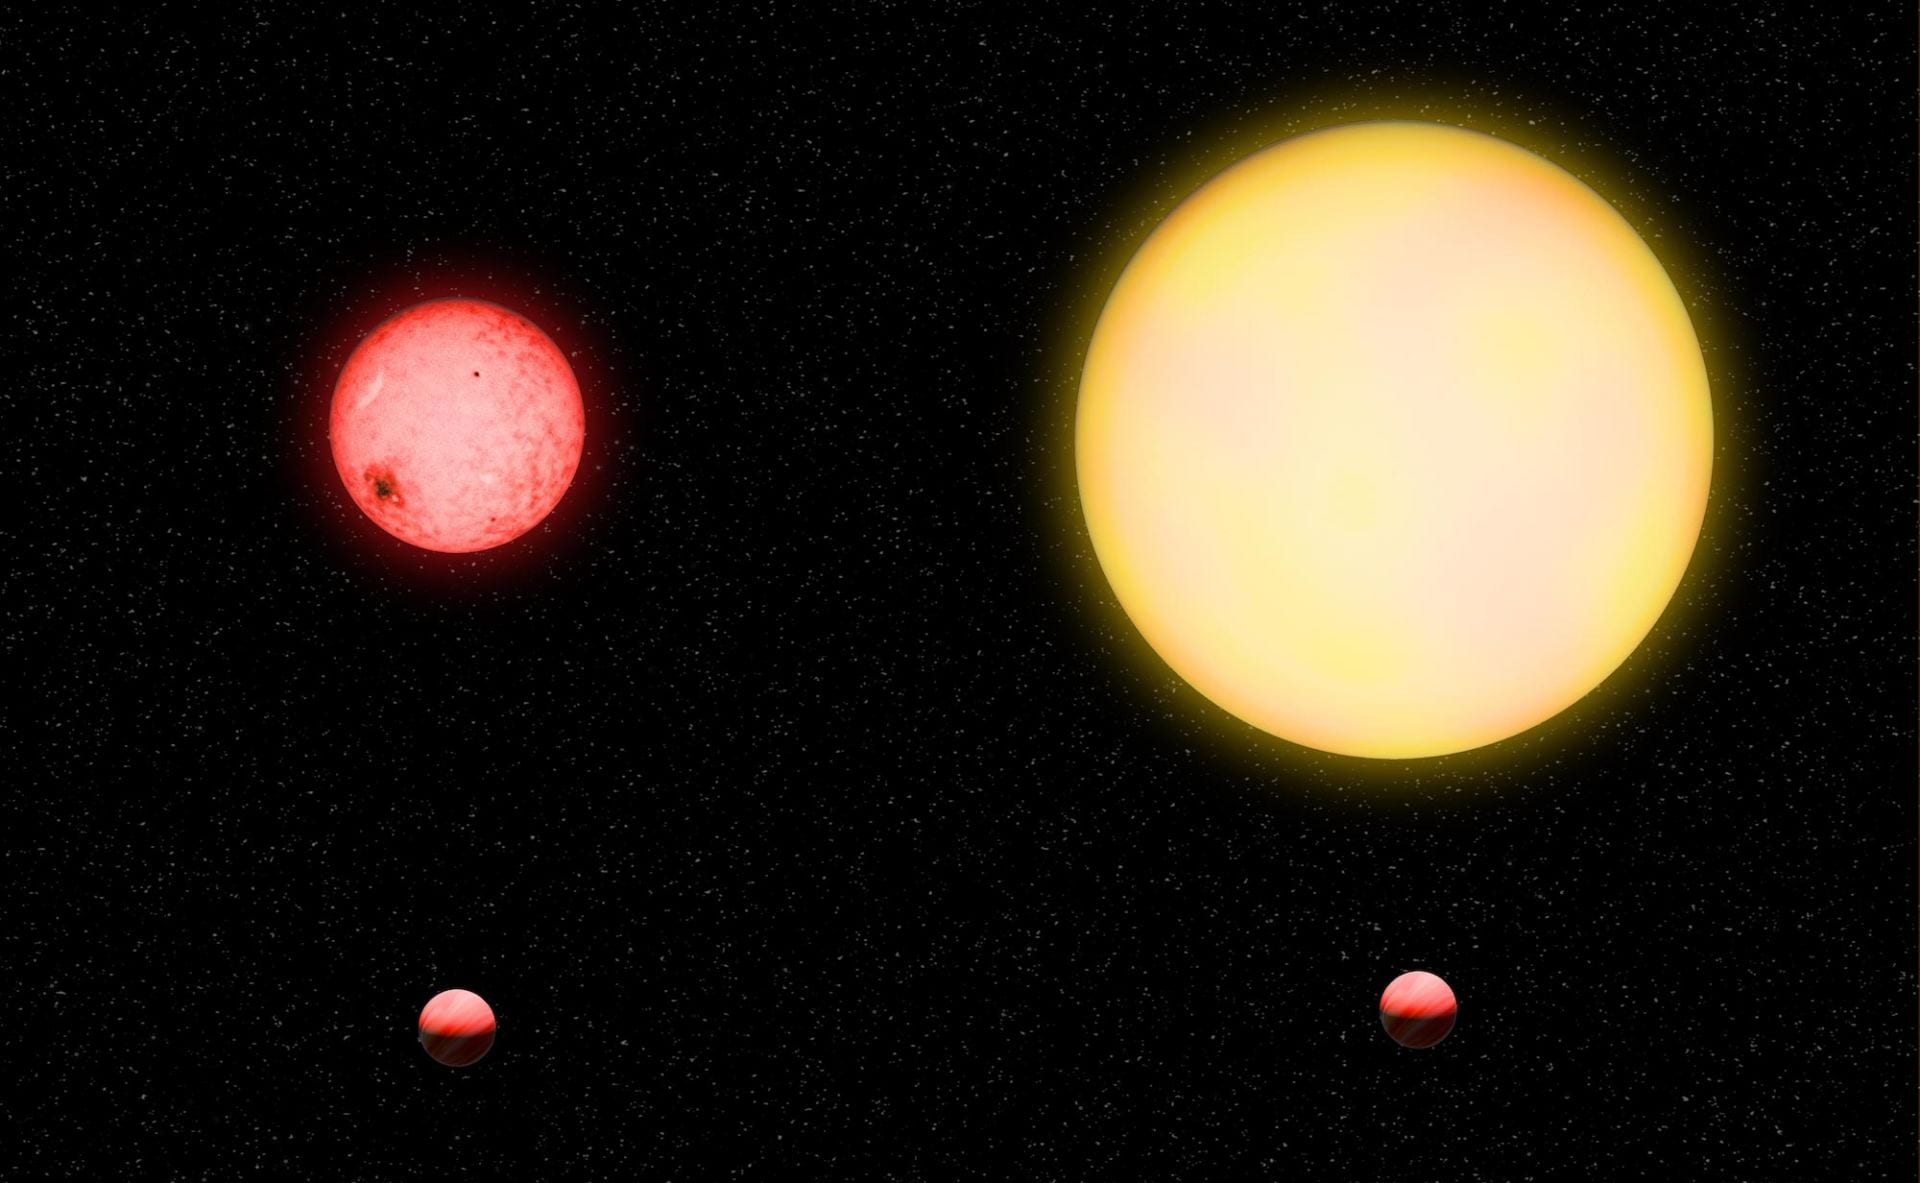 een afbeelding met twee panelen die een identieke planeet laat zien die in een baan om twee sterren van zeer verschillende grootte draait. de ster aan de rechterkant is aanzienlijk groter dan de ster aan de linkerkant